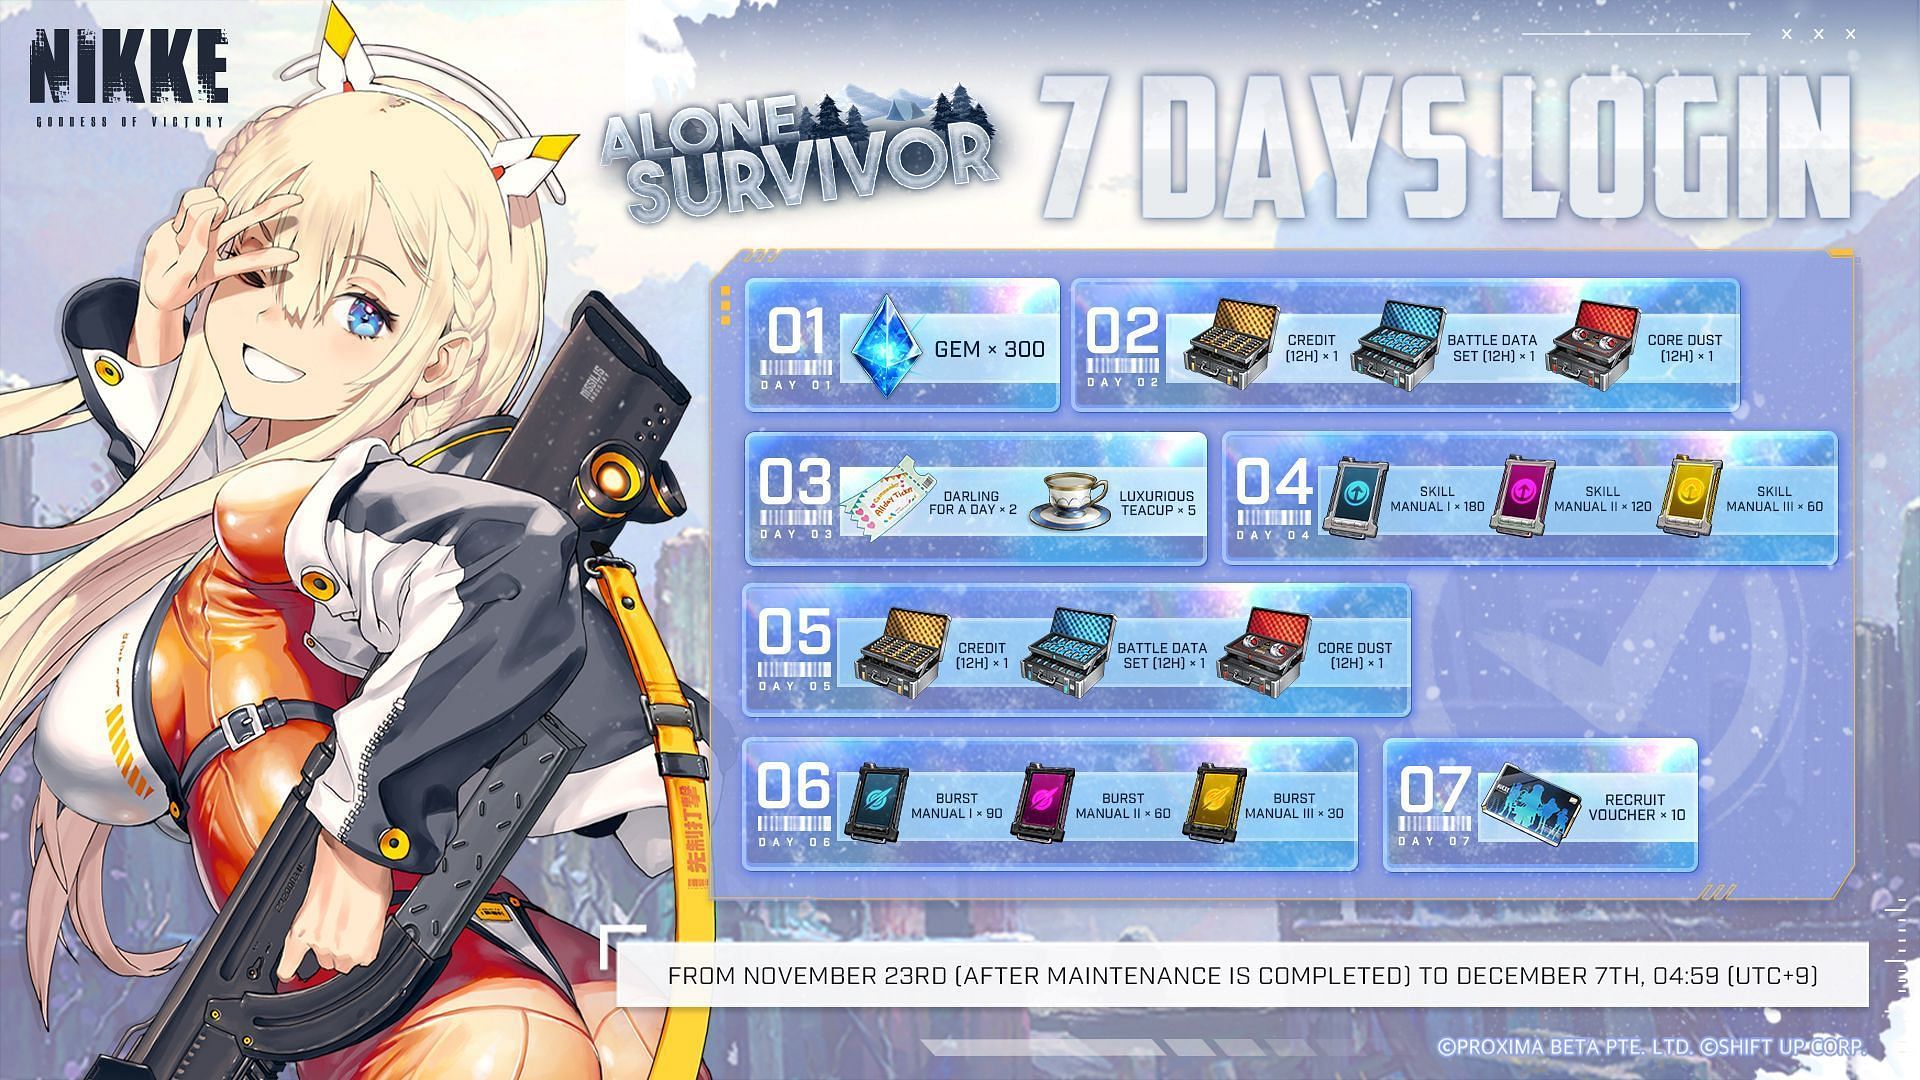 A 7-day login event, Survivor Signal in Goddess of Victory Nikke. (Image via Shift Up)